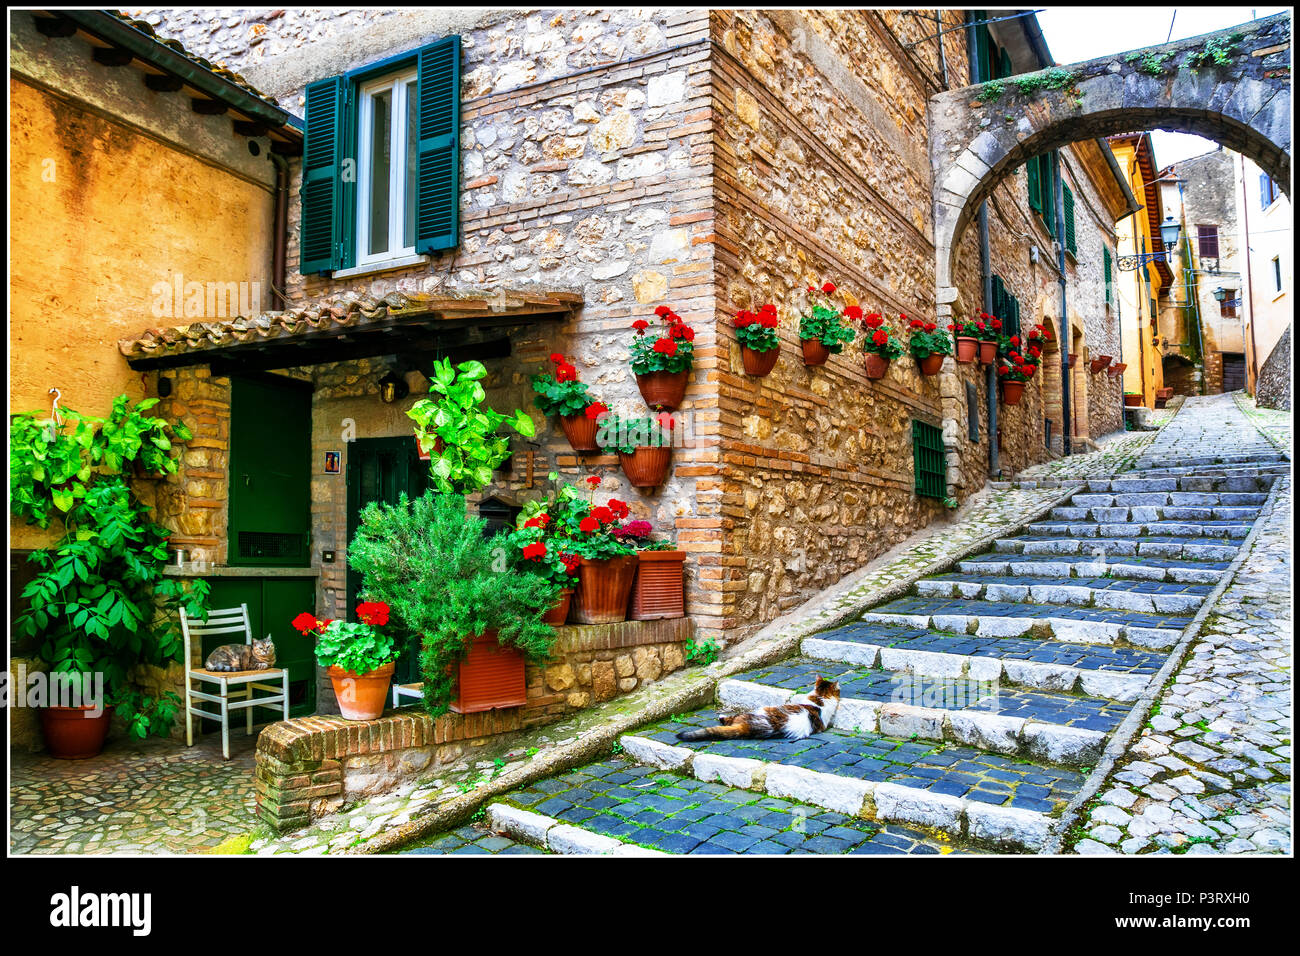 Alte Straßen der italienischen Dorf, mit Blick auf alte Tür, Fenster und Blumenschmuck, Casperia, Rieti, Latium. Stockfoto